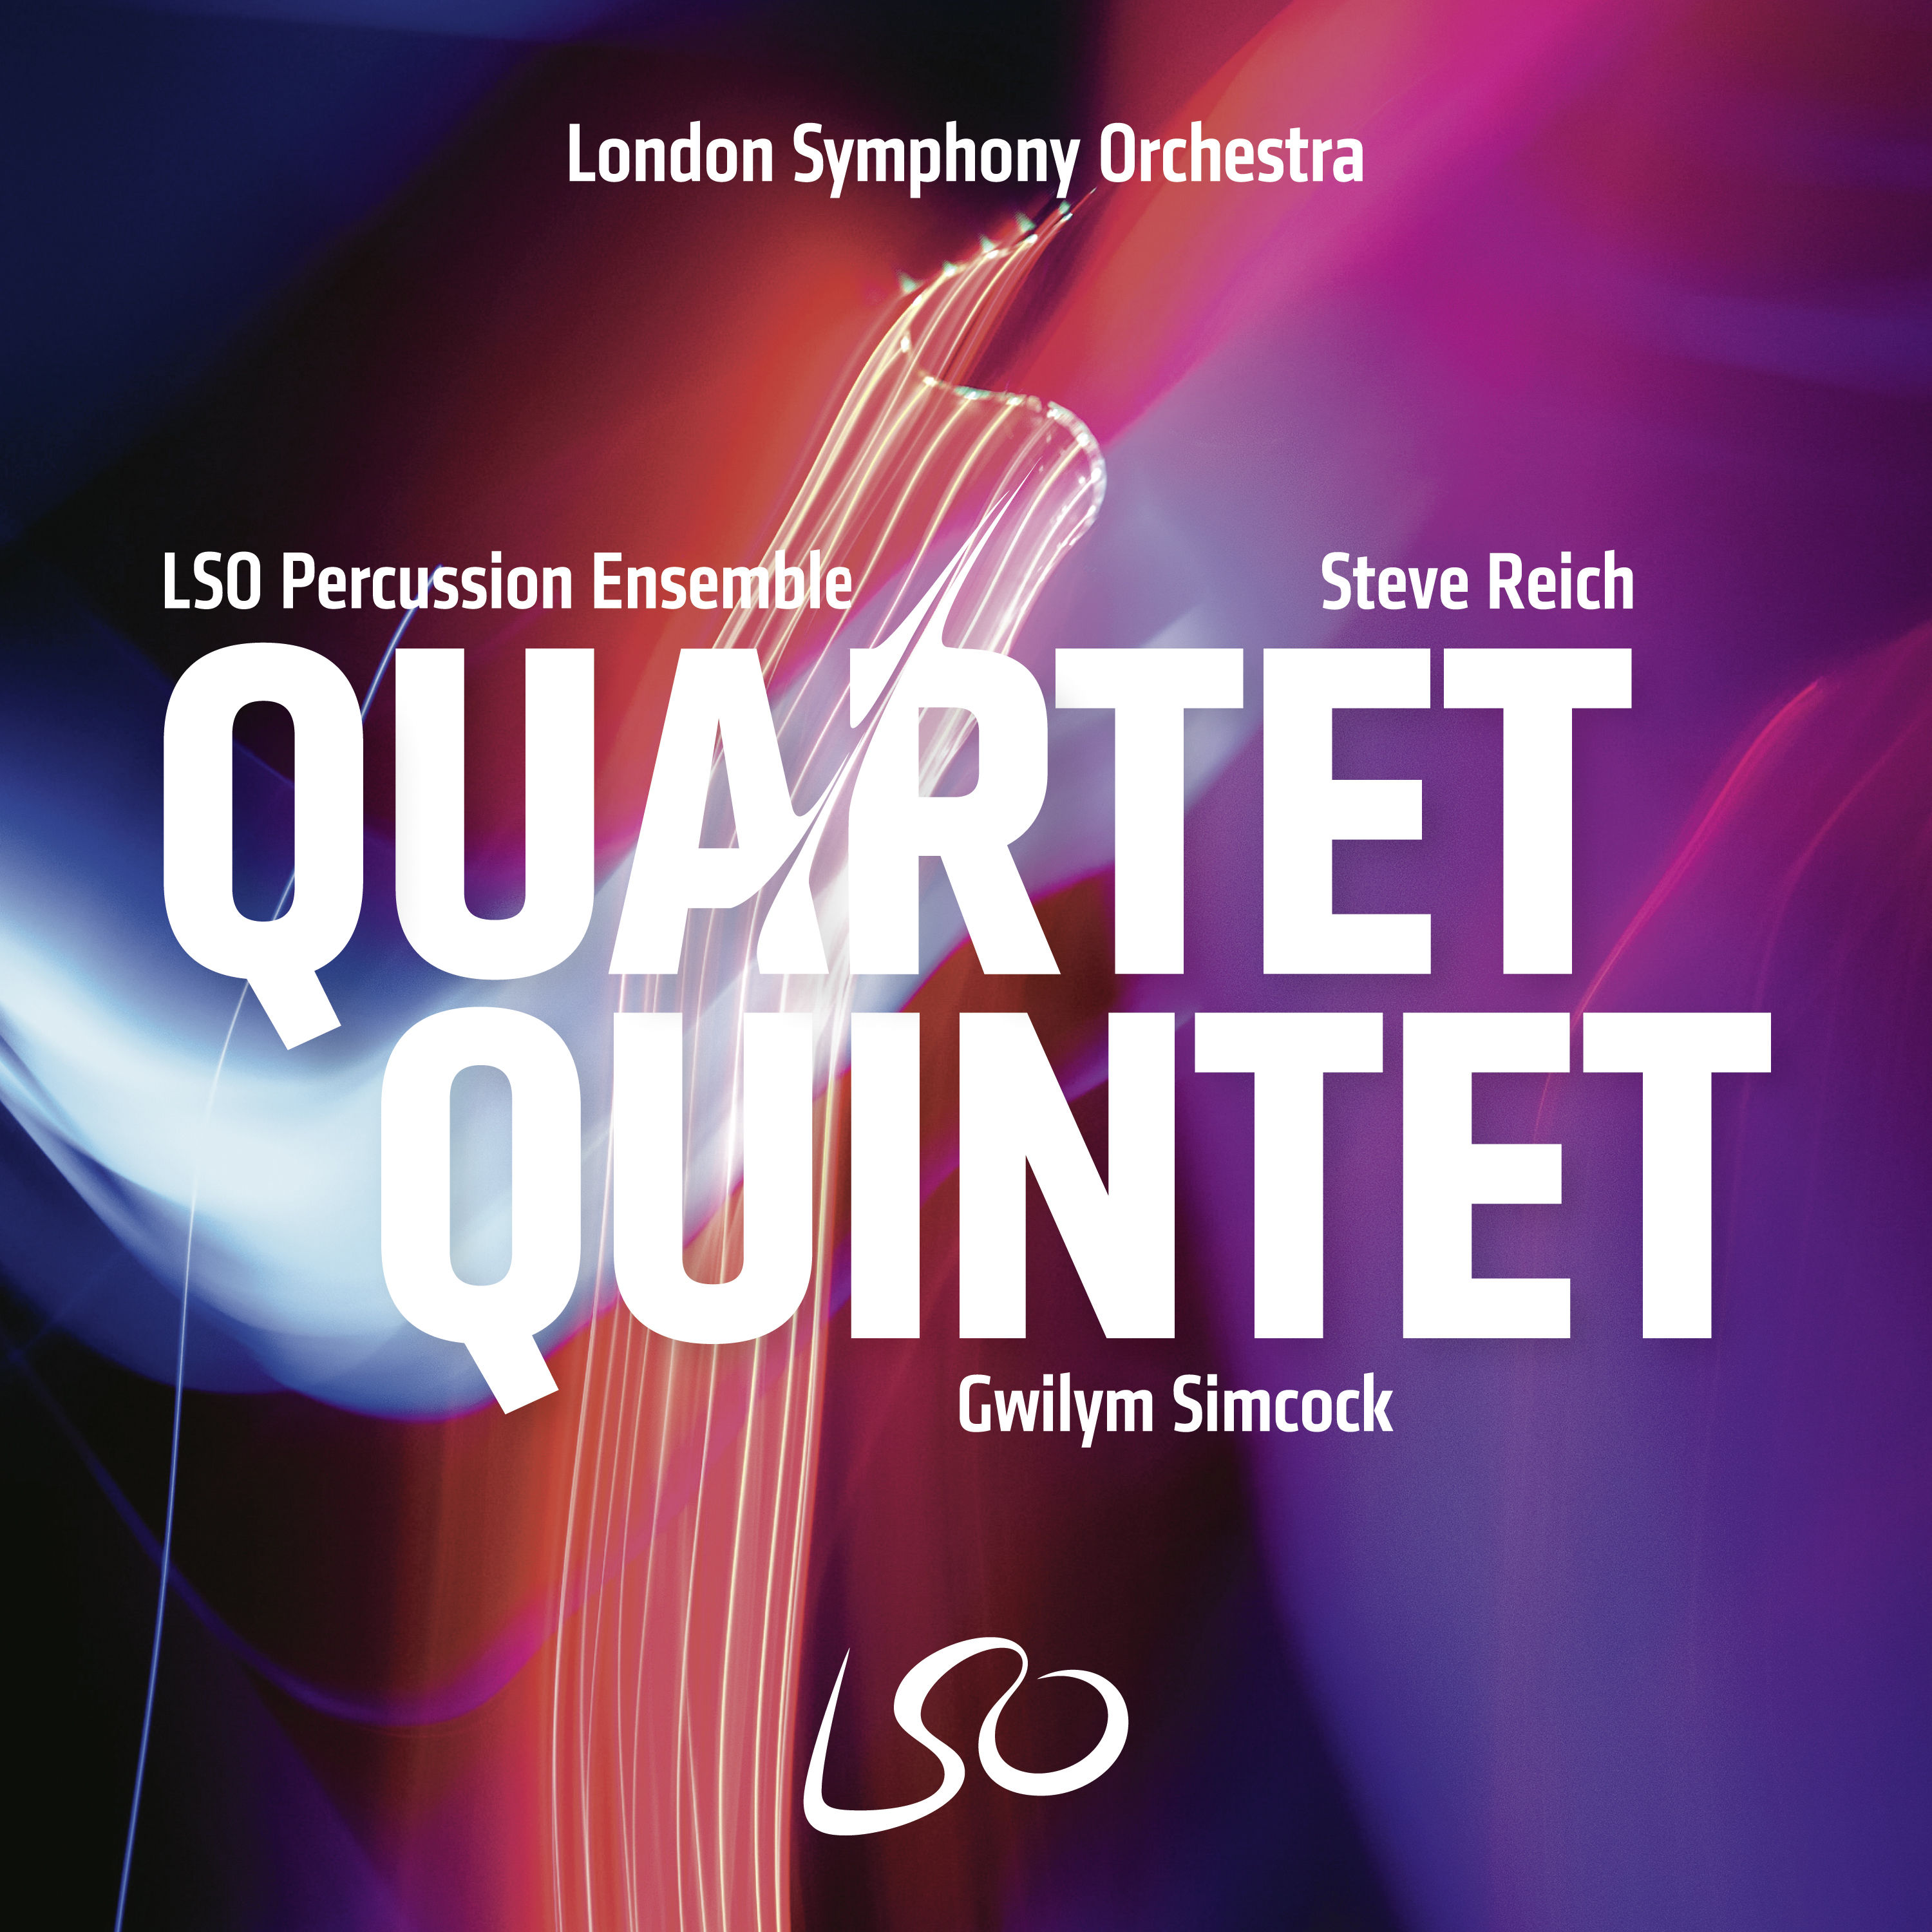 LSO Percussion Ensemble – Quartet Quintet (2020) [FLAC 24bit/96kHz]